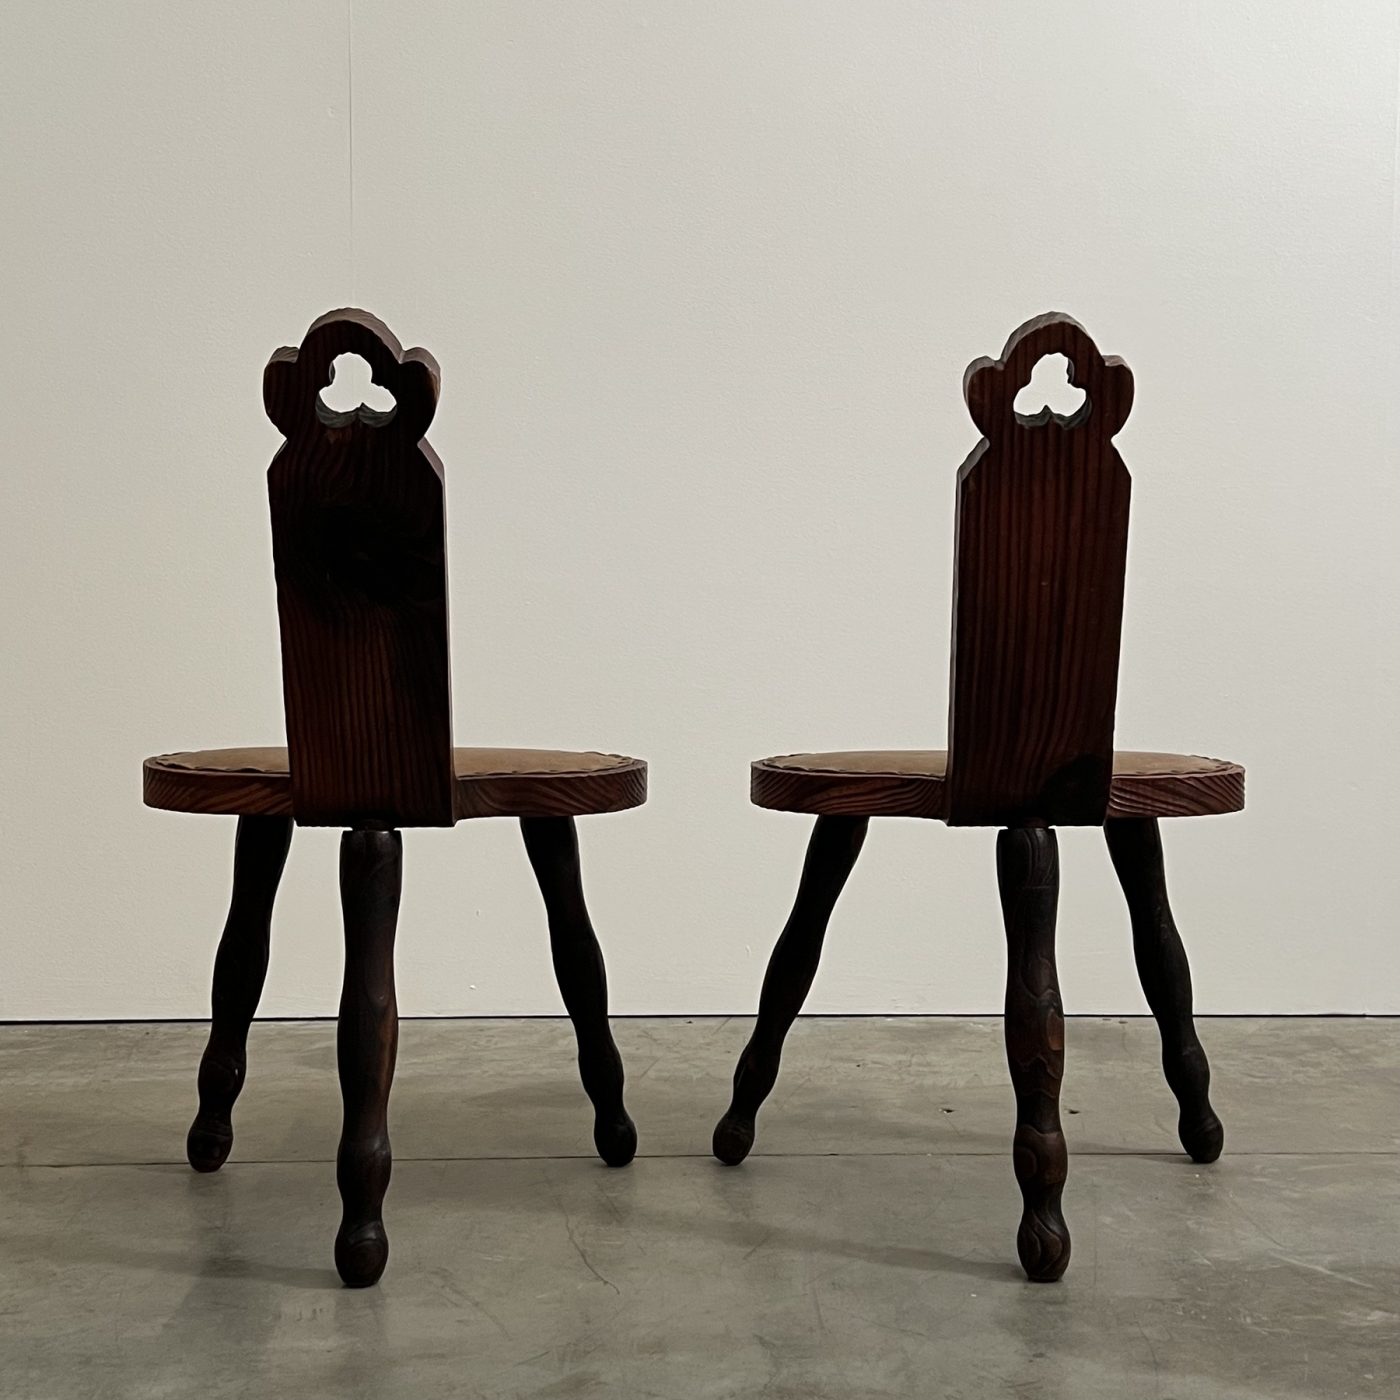 objet-vagabond-primitive-chairs0003